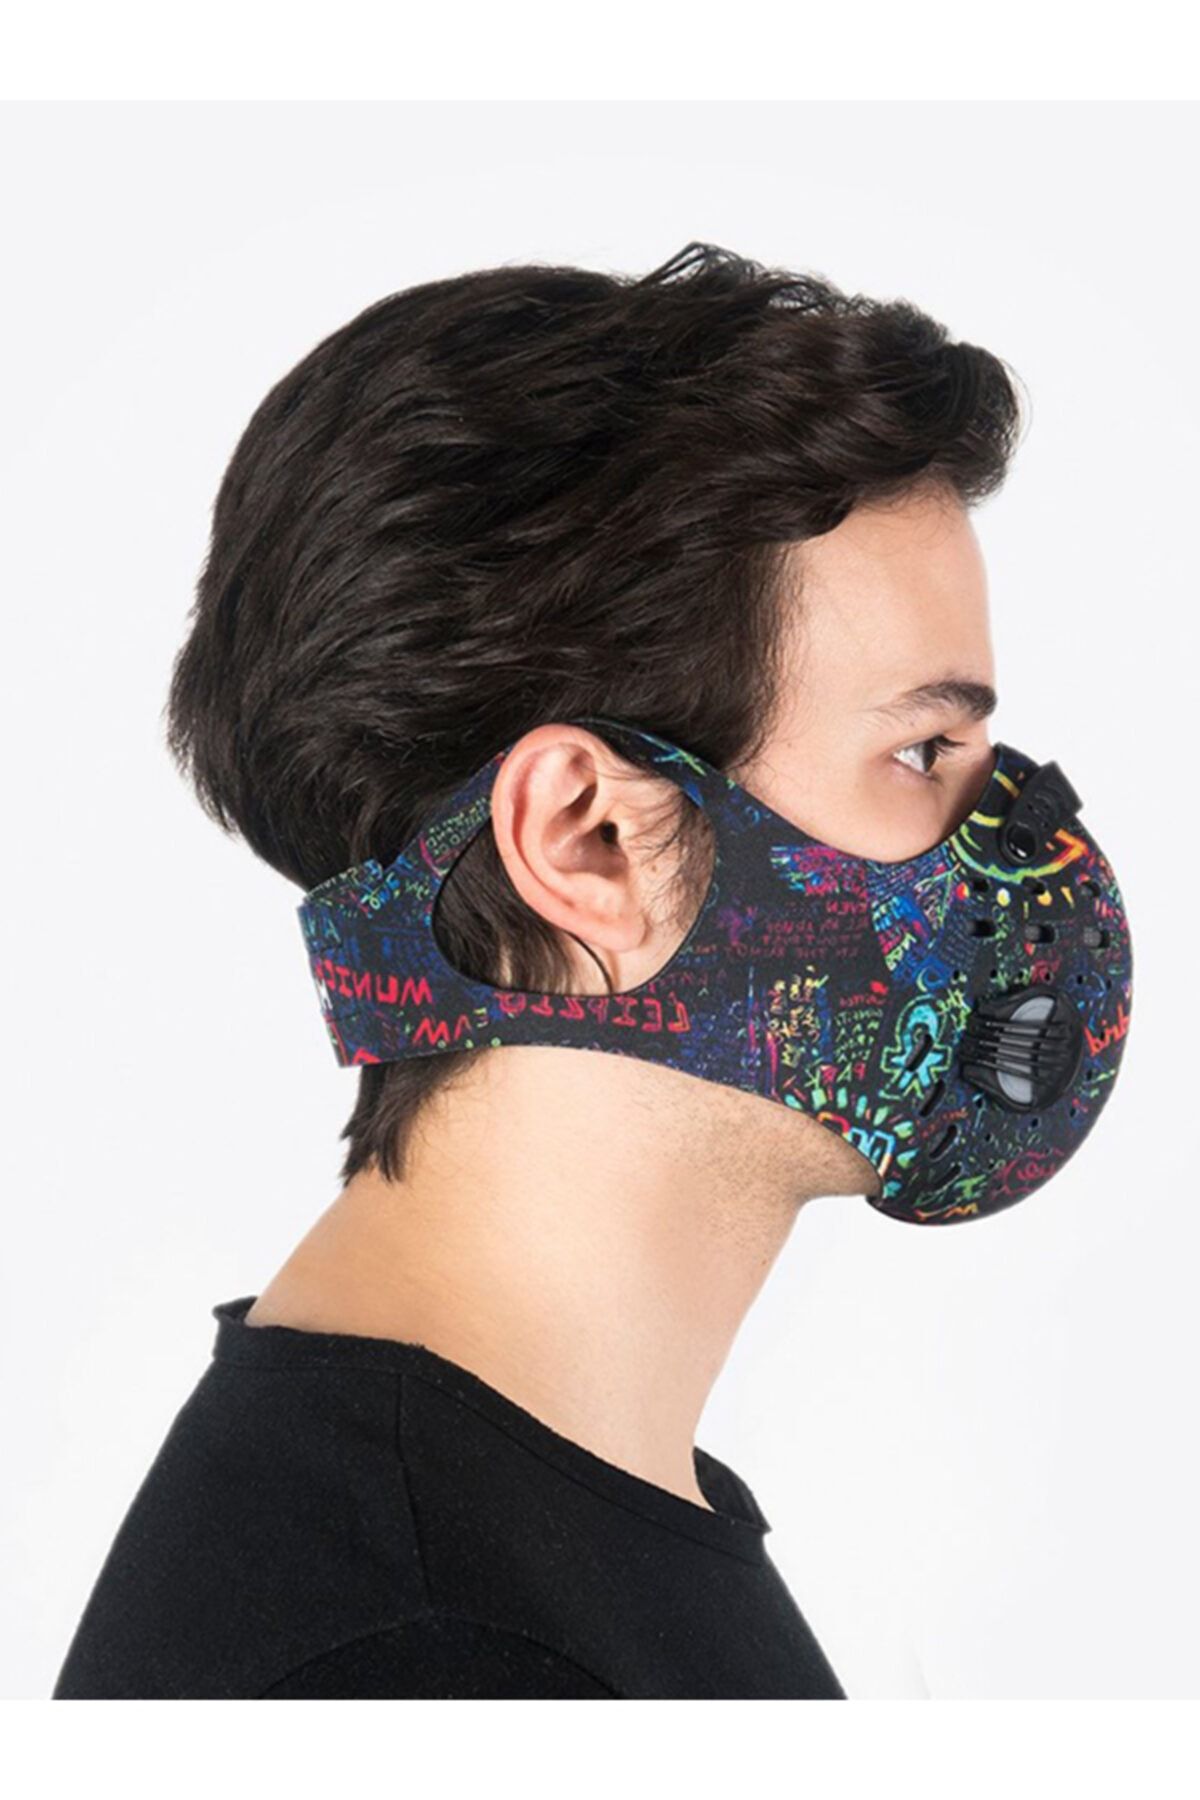 CHUM Spacephobia Aktif Karbon Filtreli Outdoor Maske (erkek)